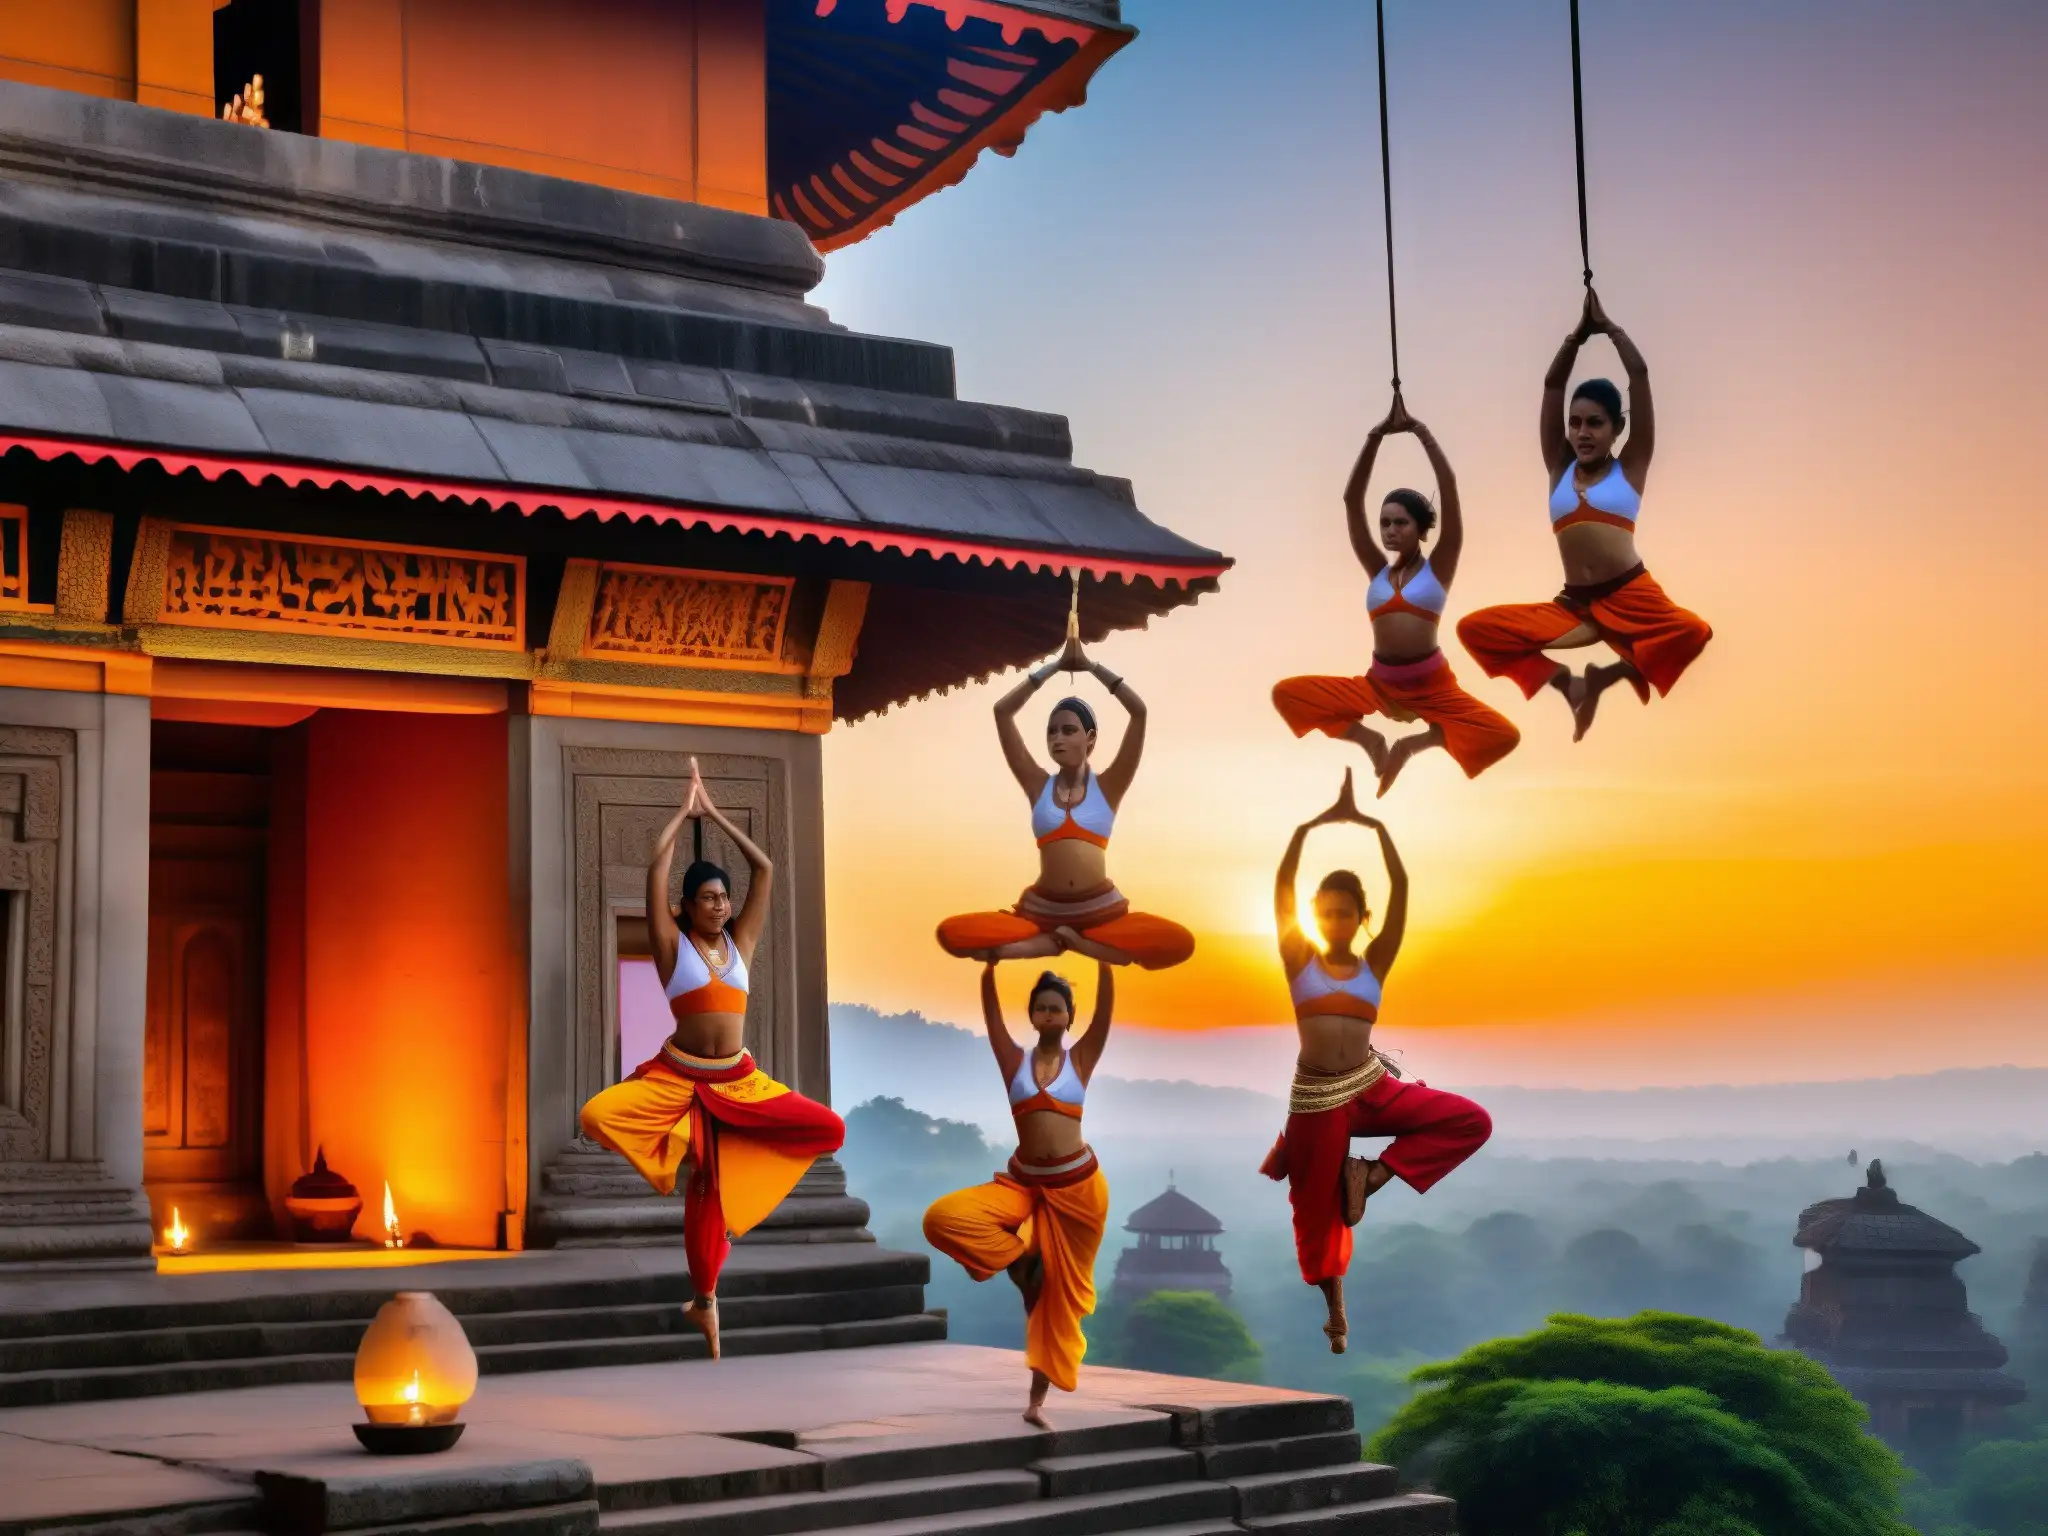 Yoginis voladoras realizan acrobacias aéreas en ruinas de templo al atardecer, conexión con prácticas religiosas